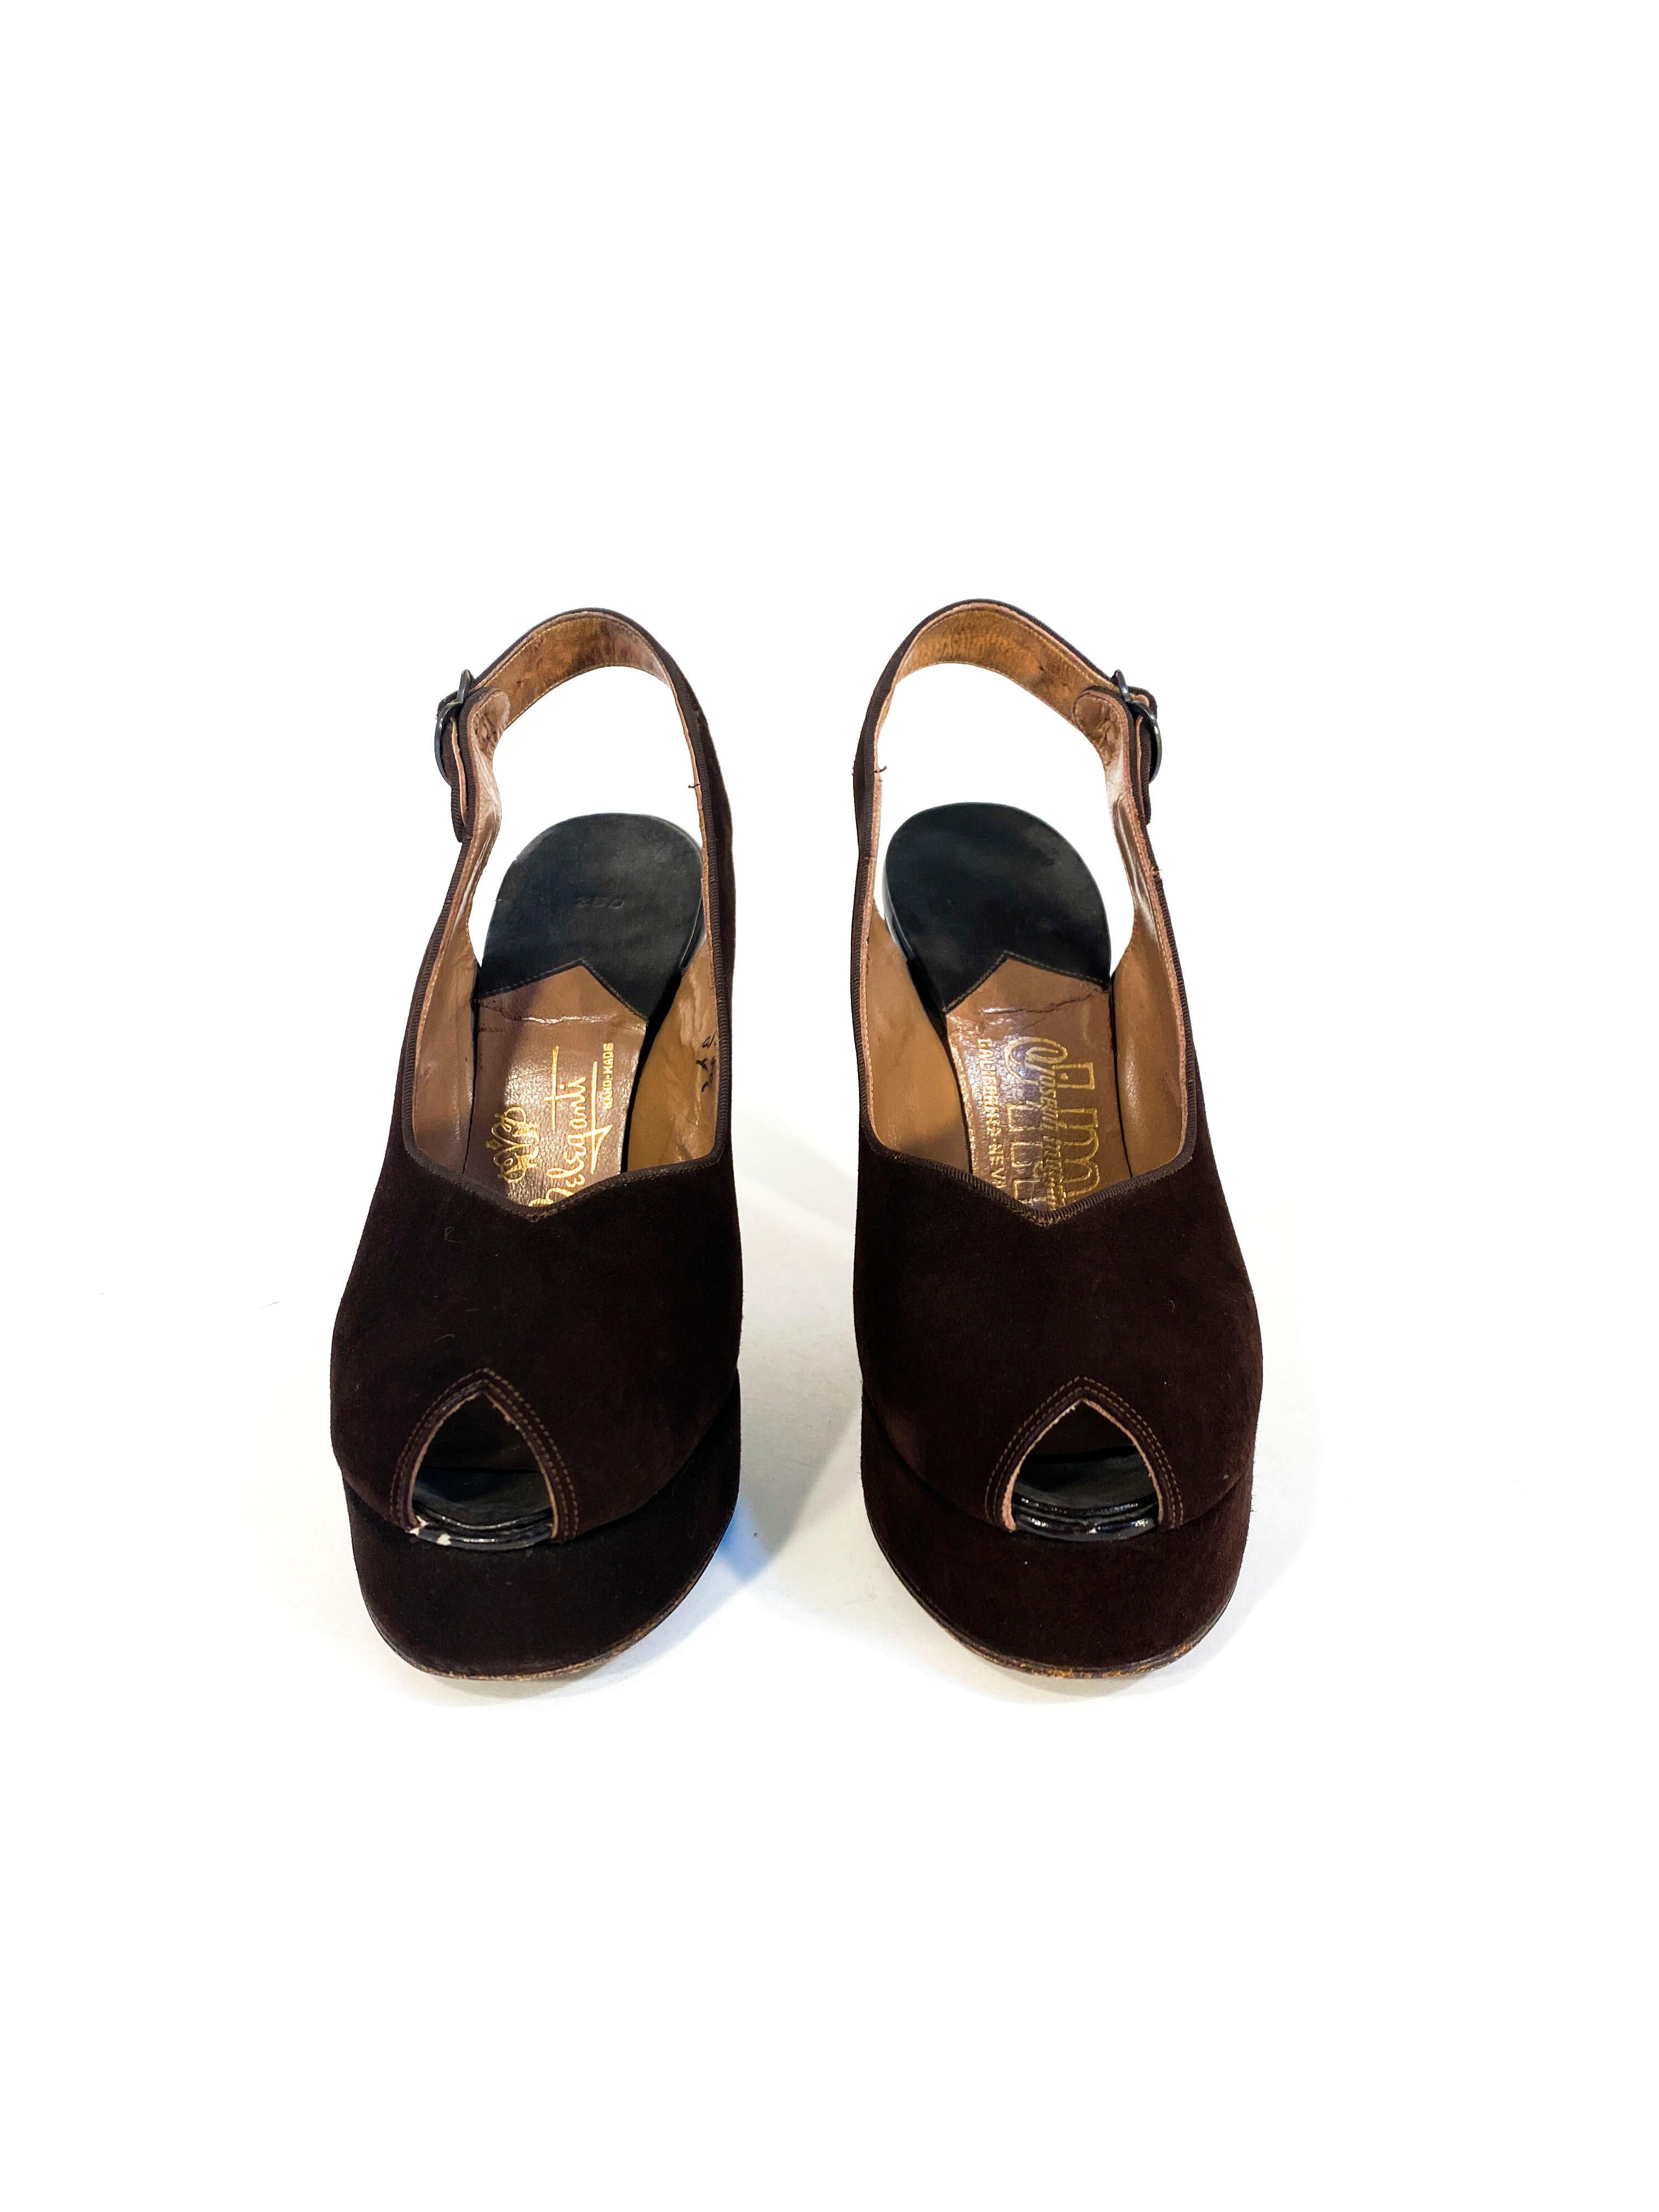 chaussures à talon en plate-forme en daim marron des années 1940, avec boucles d'attache, semelles en cuir et talon de 10 cm. 